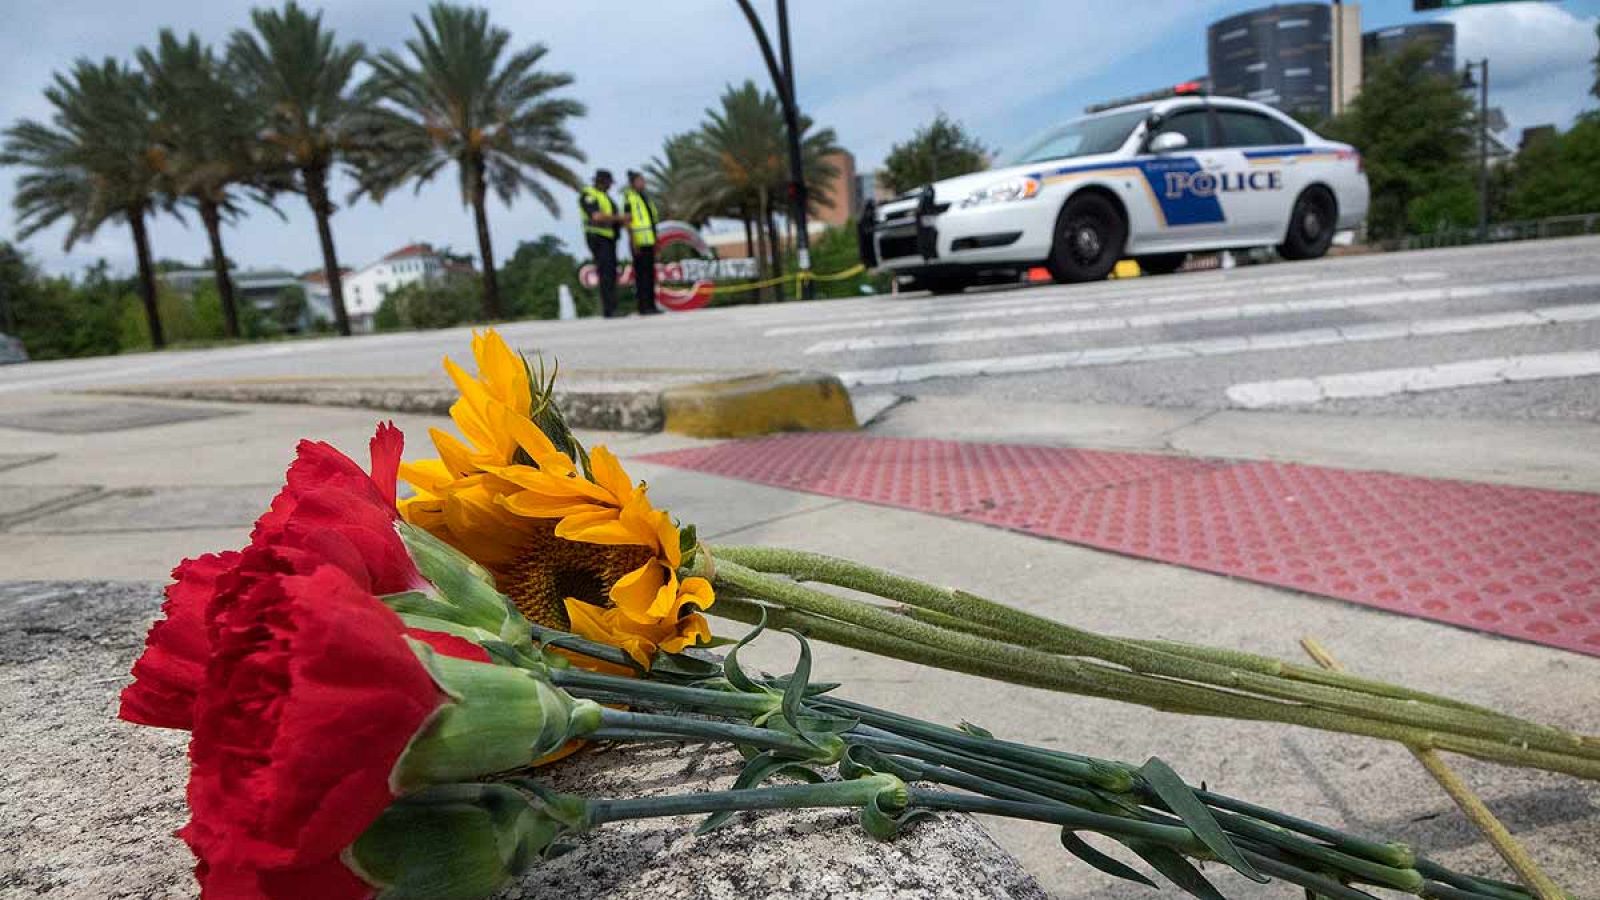 Flores junto al hospital de Orlando en el que varios heridos del tiroteo están ingresados